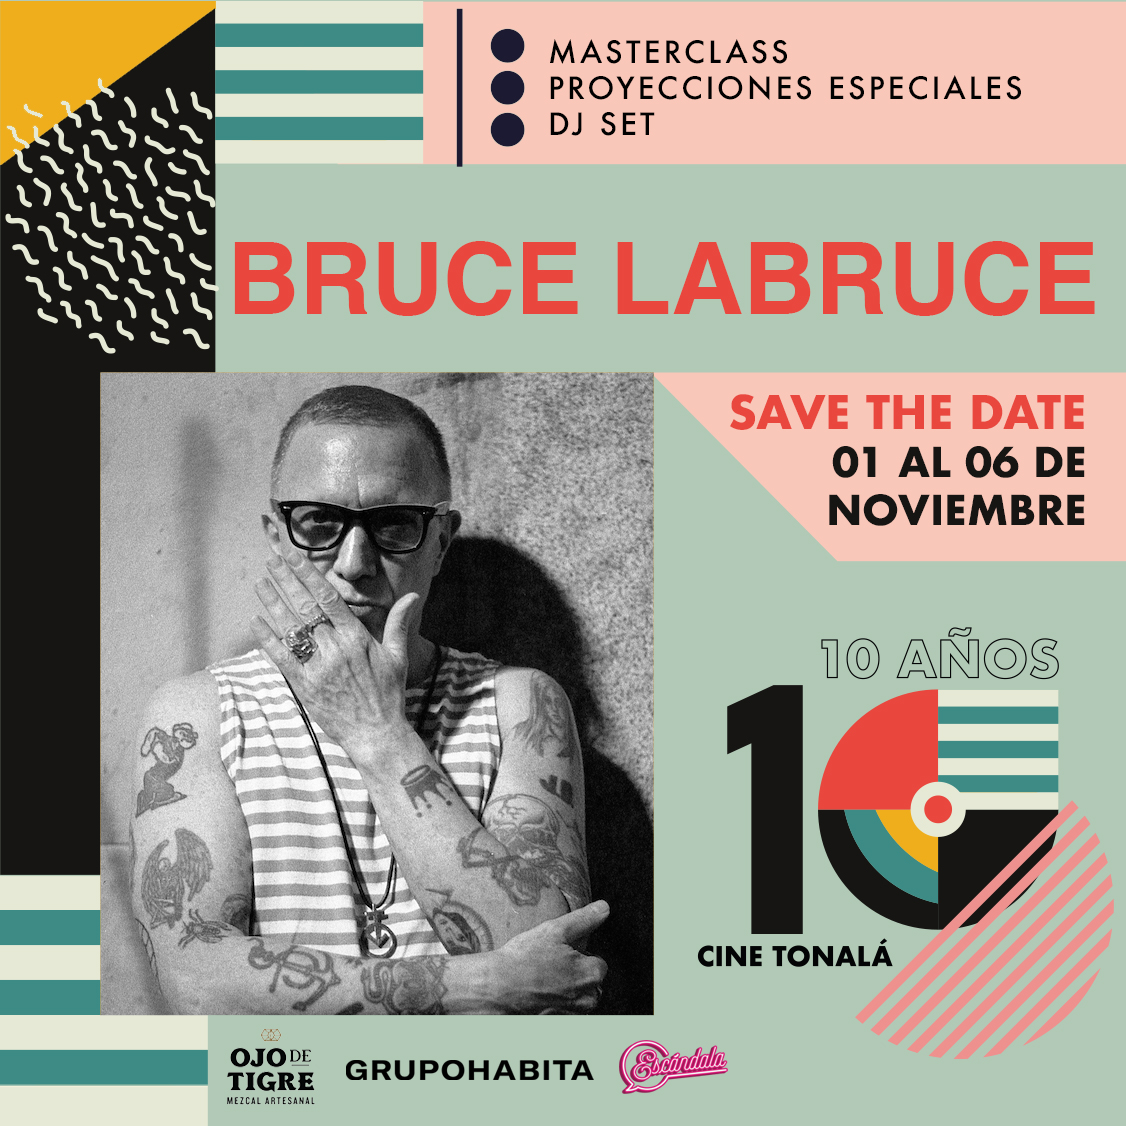 It's Happening! El Maestro @BruceLaBruce vendrá a México como parte de las celebraciones del @cinetonala #CineTonala #10Años 😱🎞️🏳️‍🌈🇨🇦🇲🇽